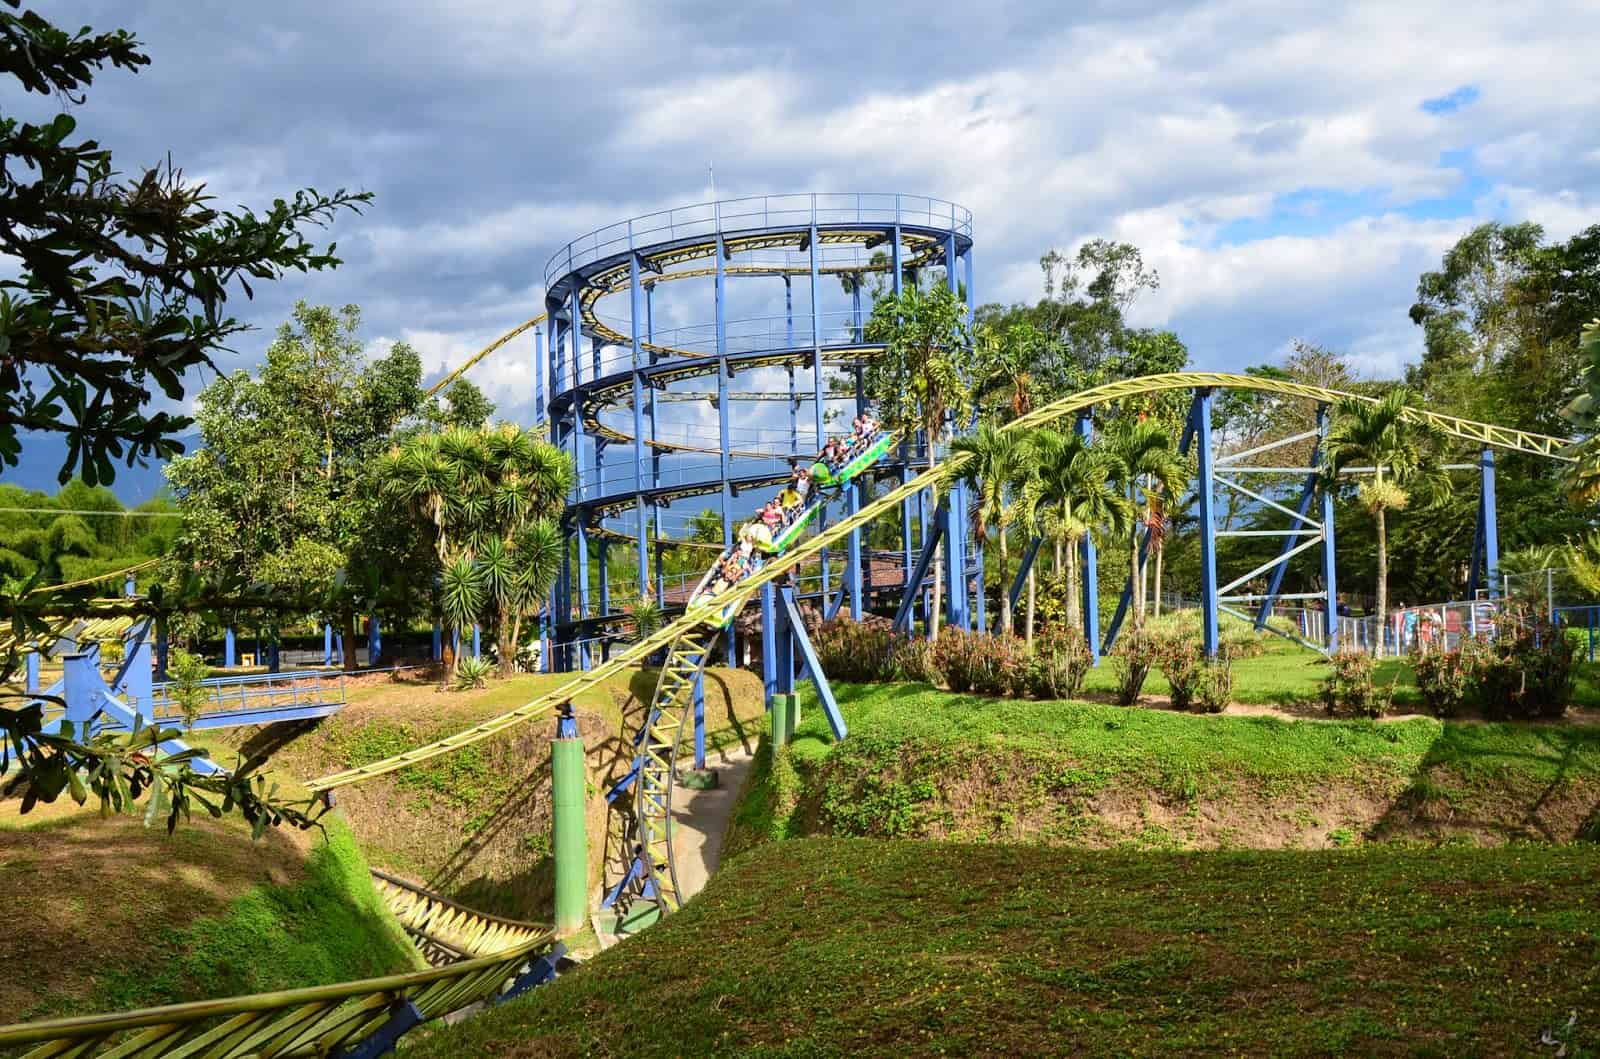 Rollercoaster at Parque Nacional del Café in Quindío, Colombia